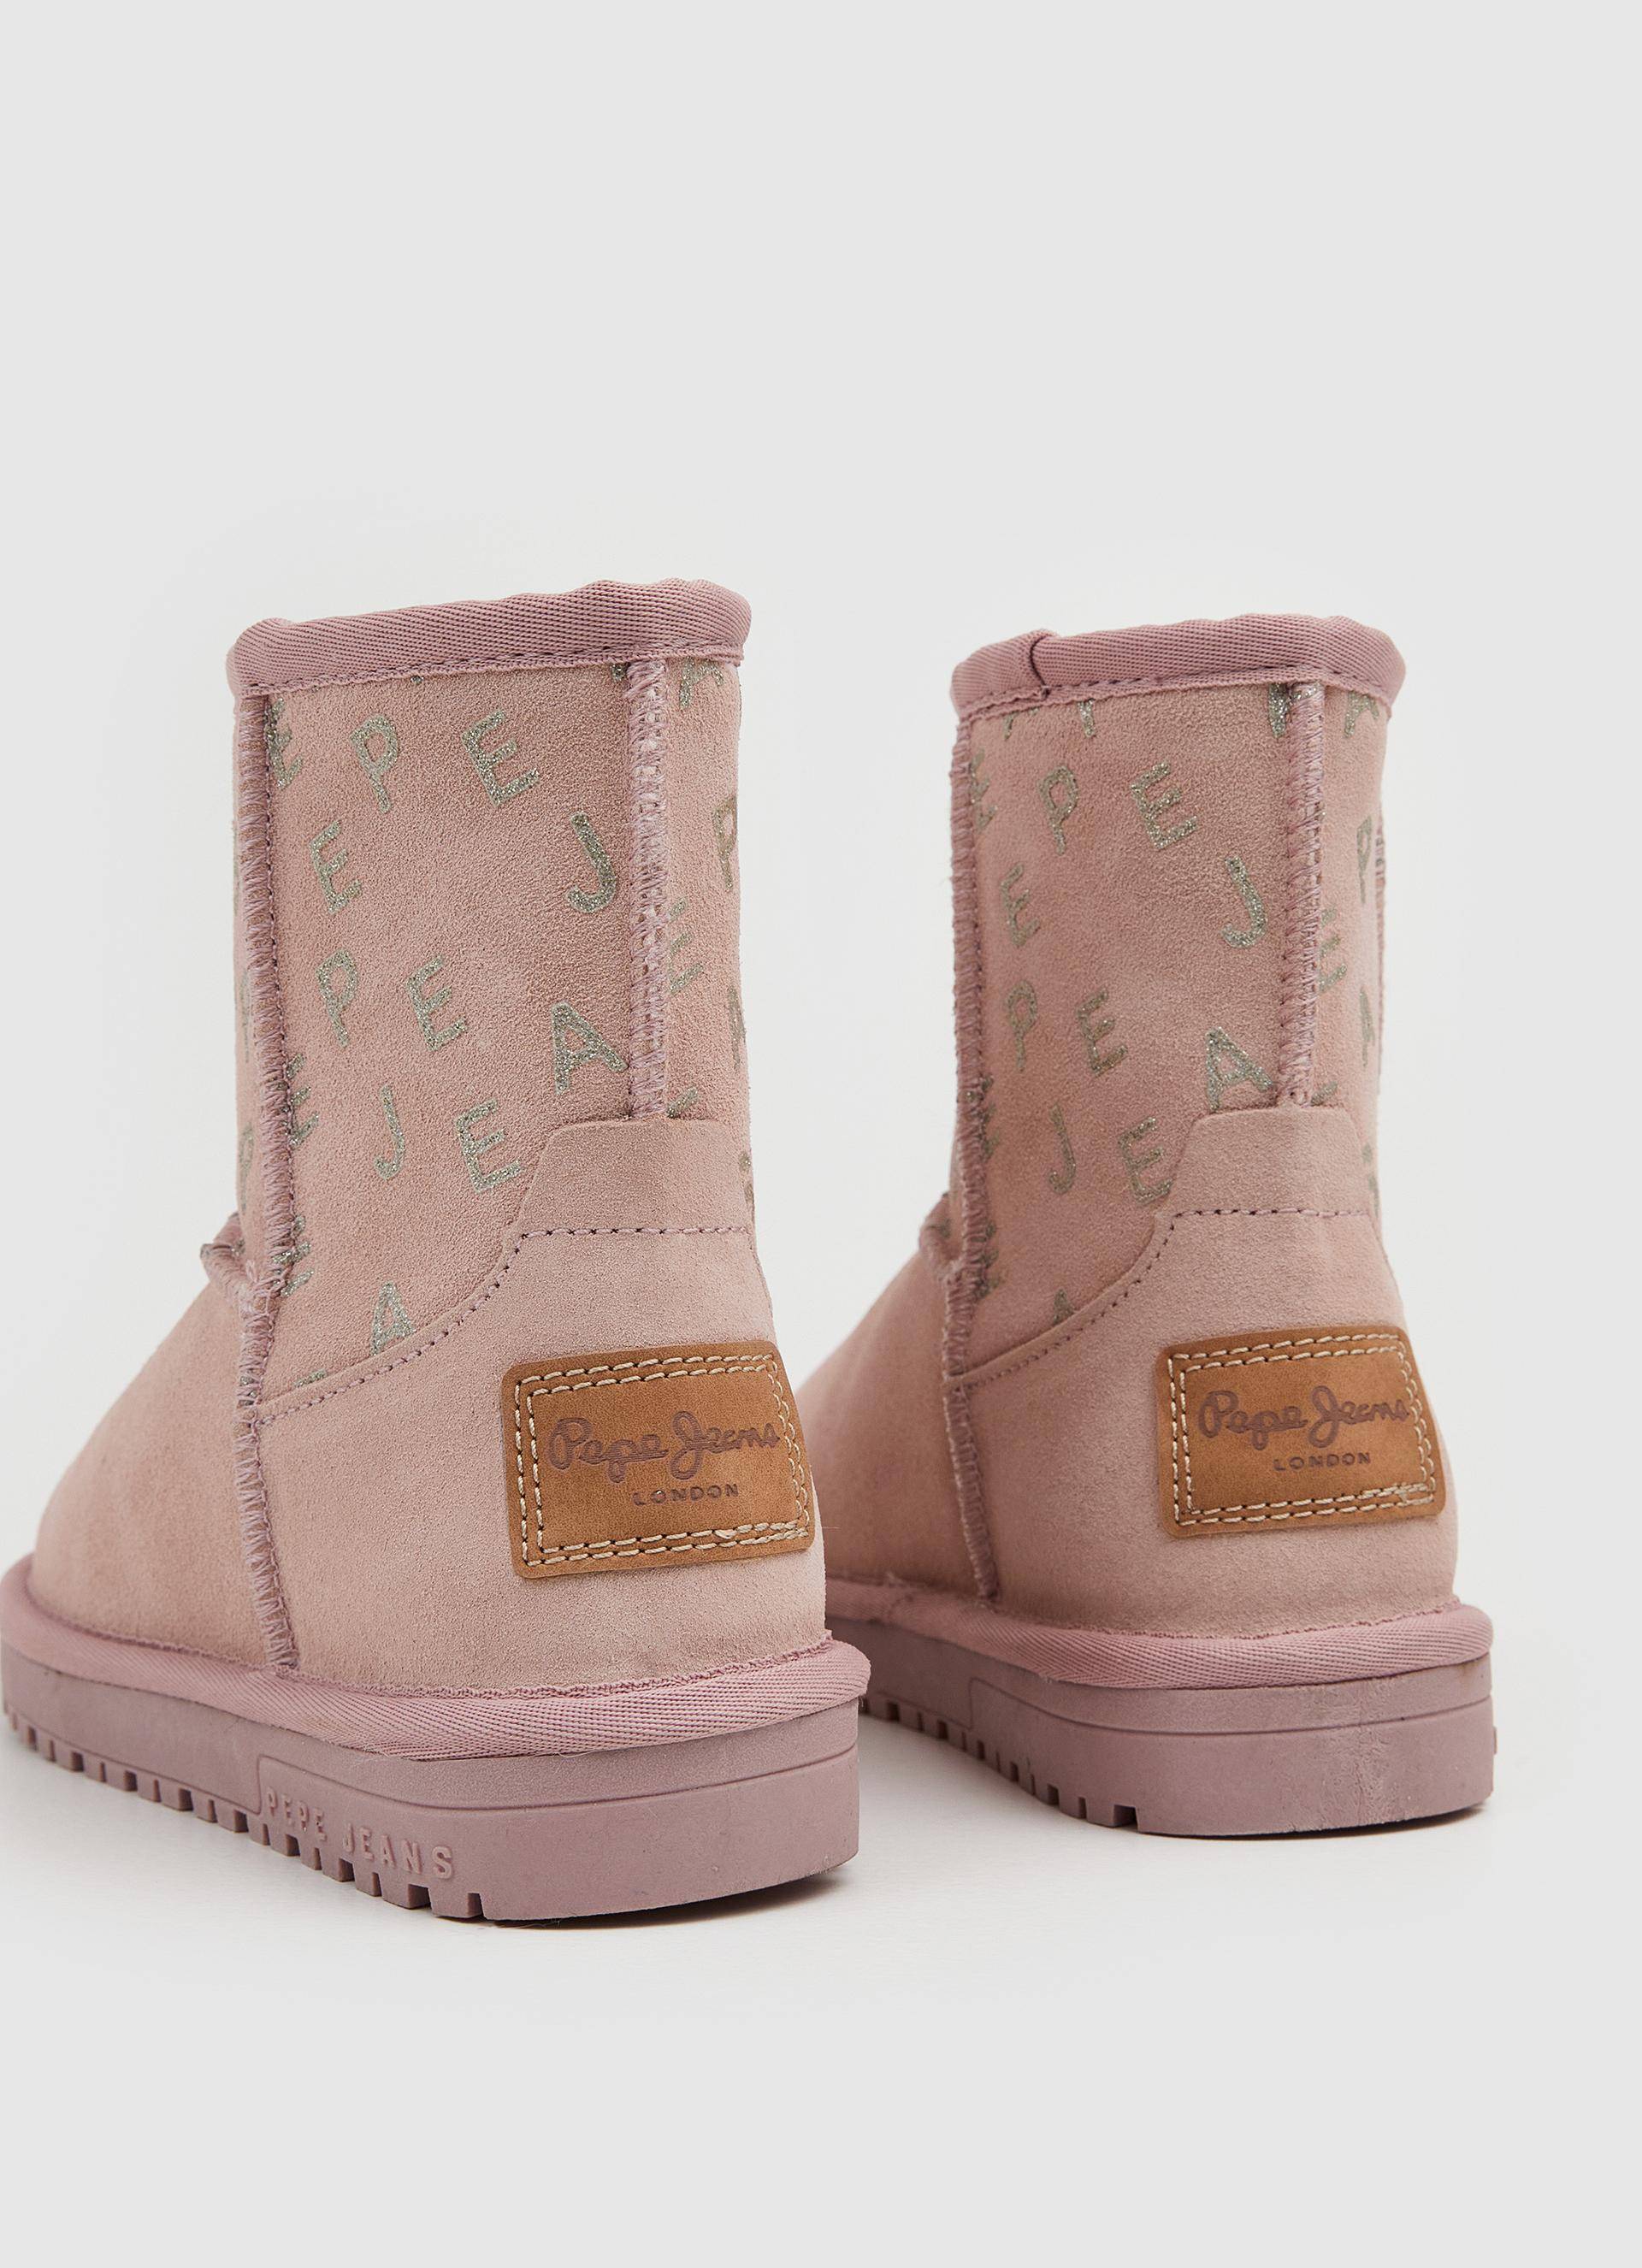 Детские ботинки из овчины (угги) Pepe Jeans London (DISS GIRL LOGY PGS50180), розовые, цвет розовый, размер 32 - фото 6